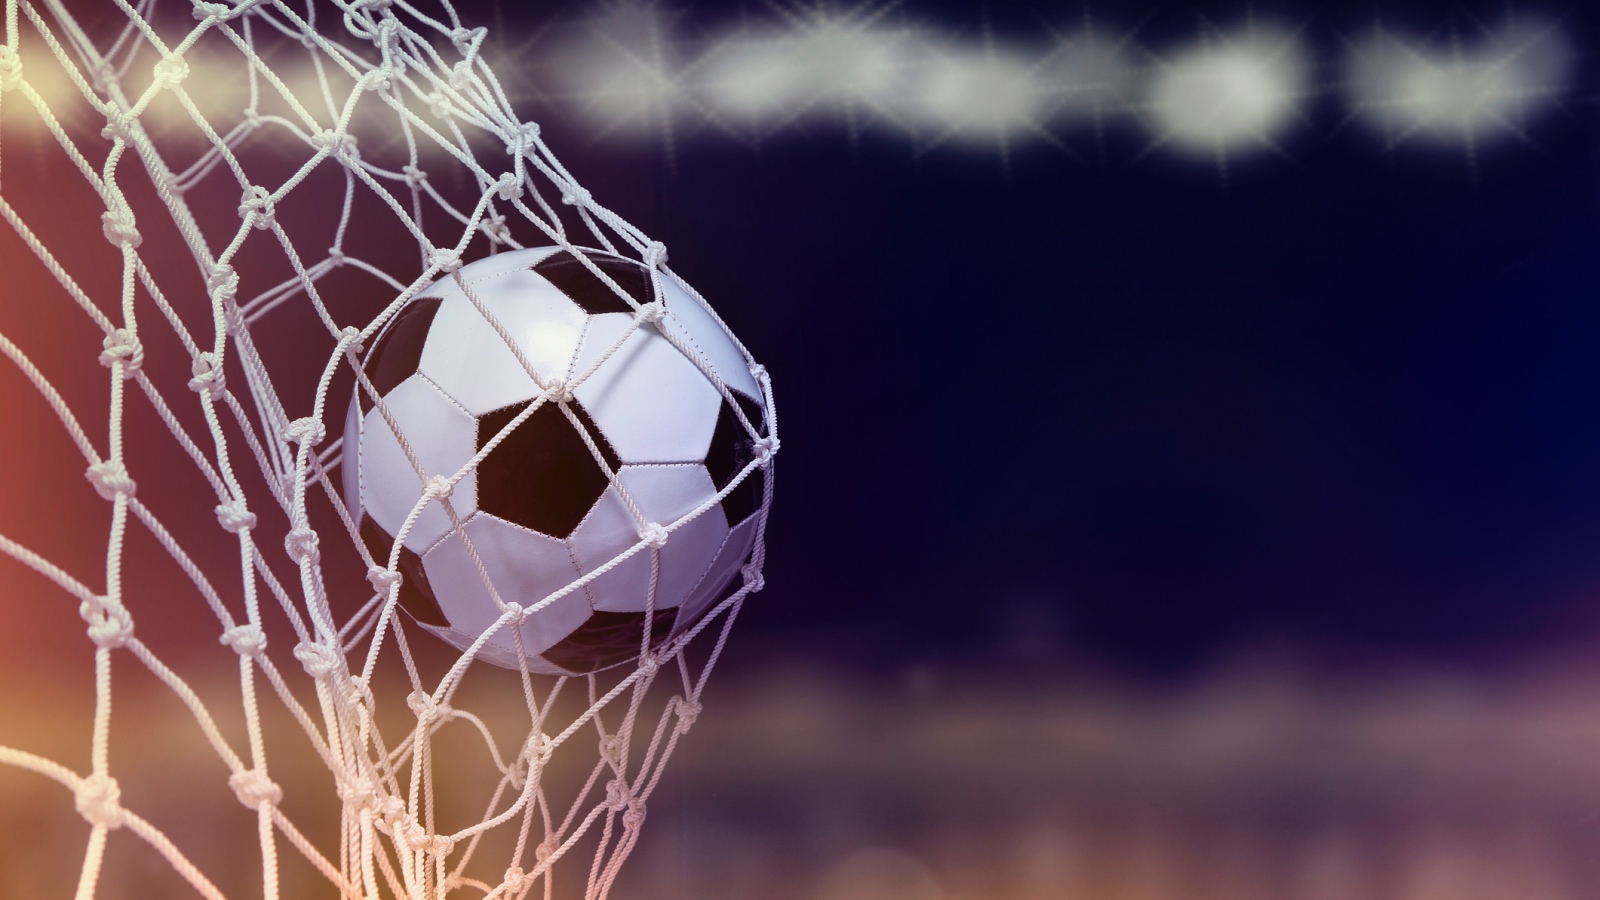 soccer ball going into a net